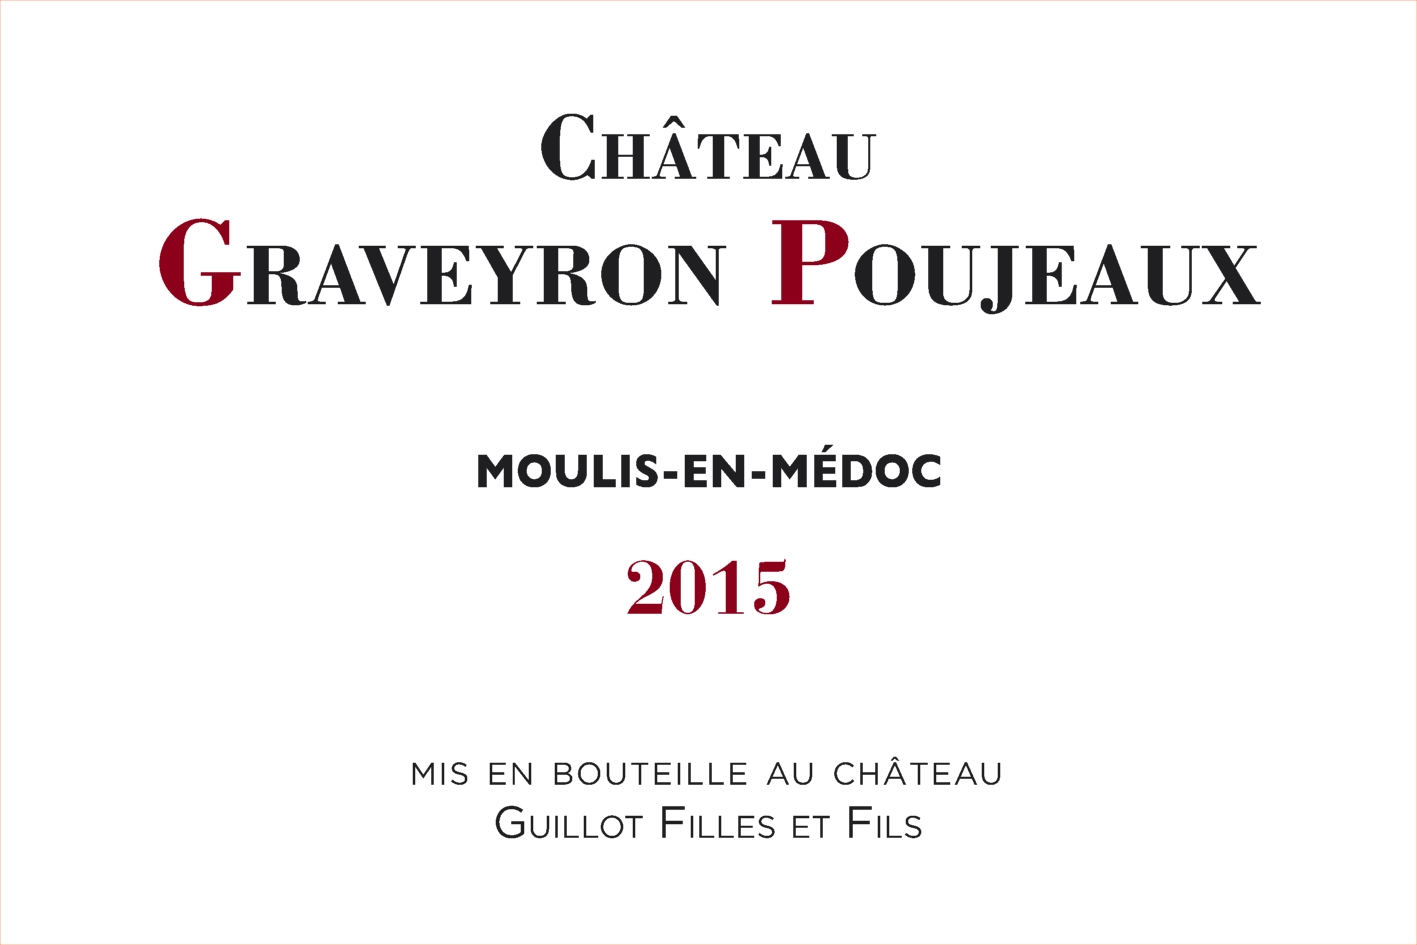 Etiquette Chateau Graveyron Poujeaux 15 Official Website Bordeaux Com